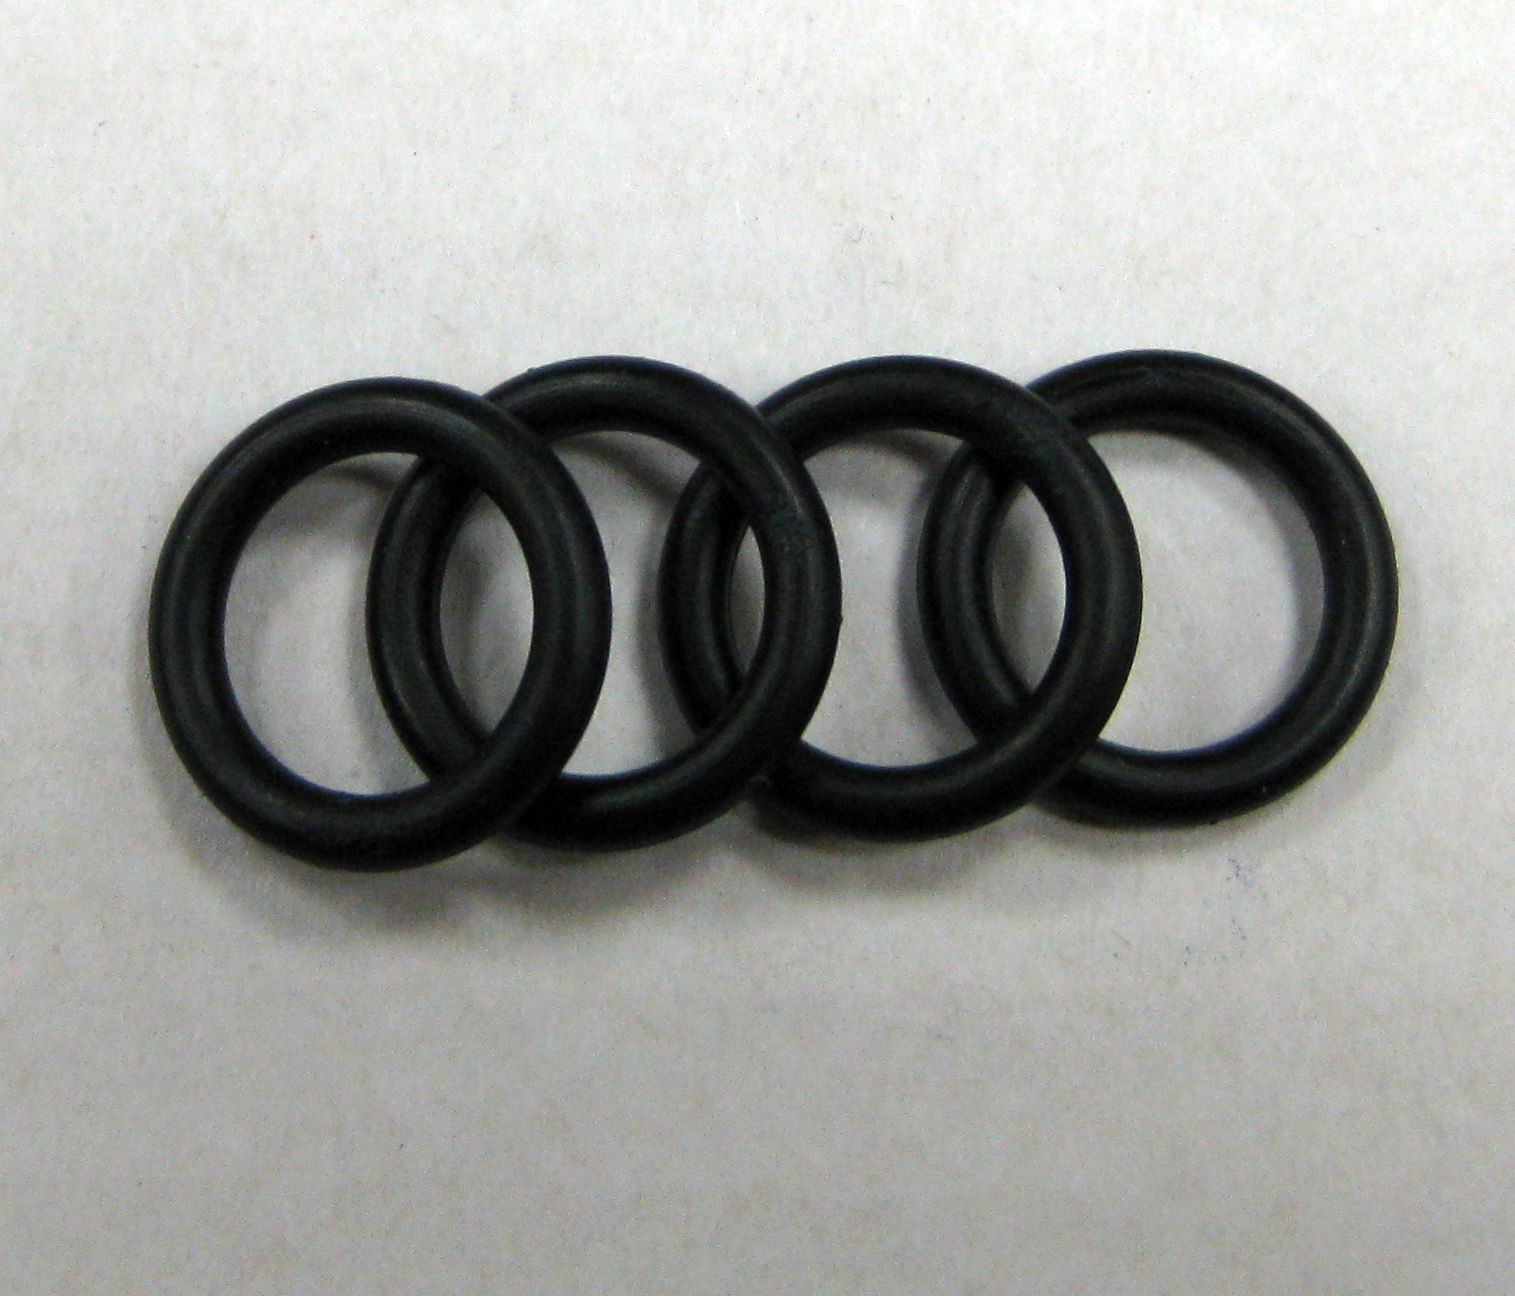   P11 O-Ring (4)